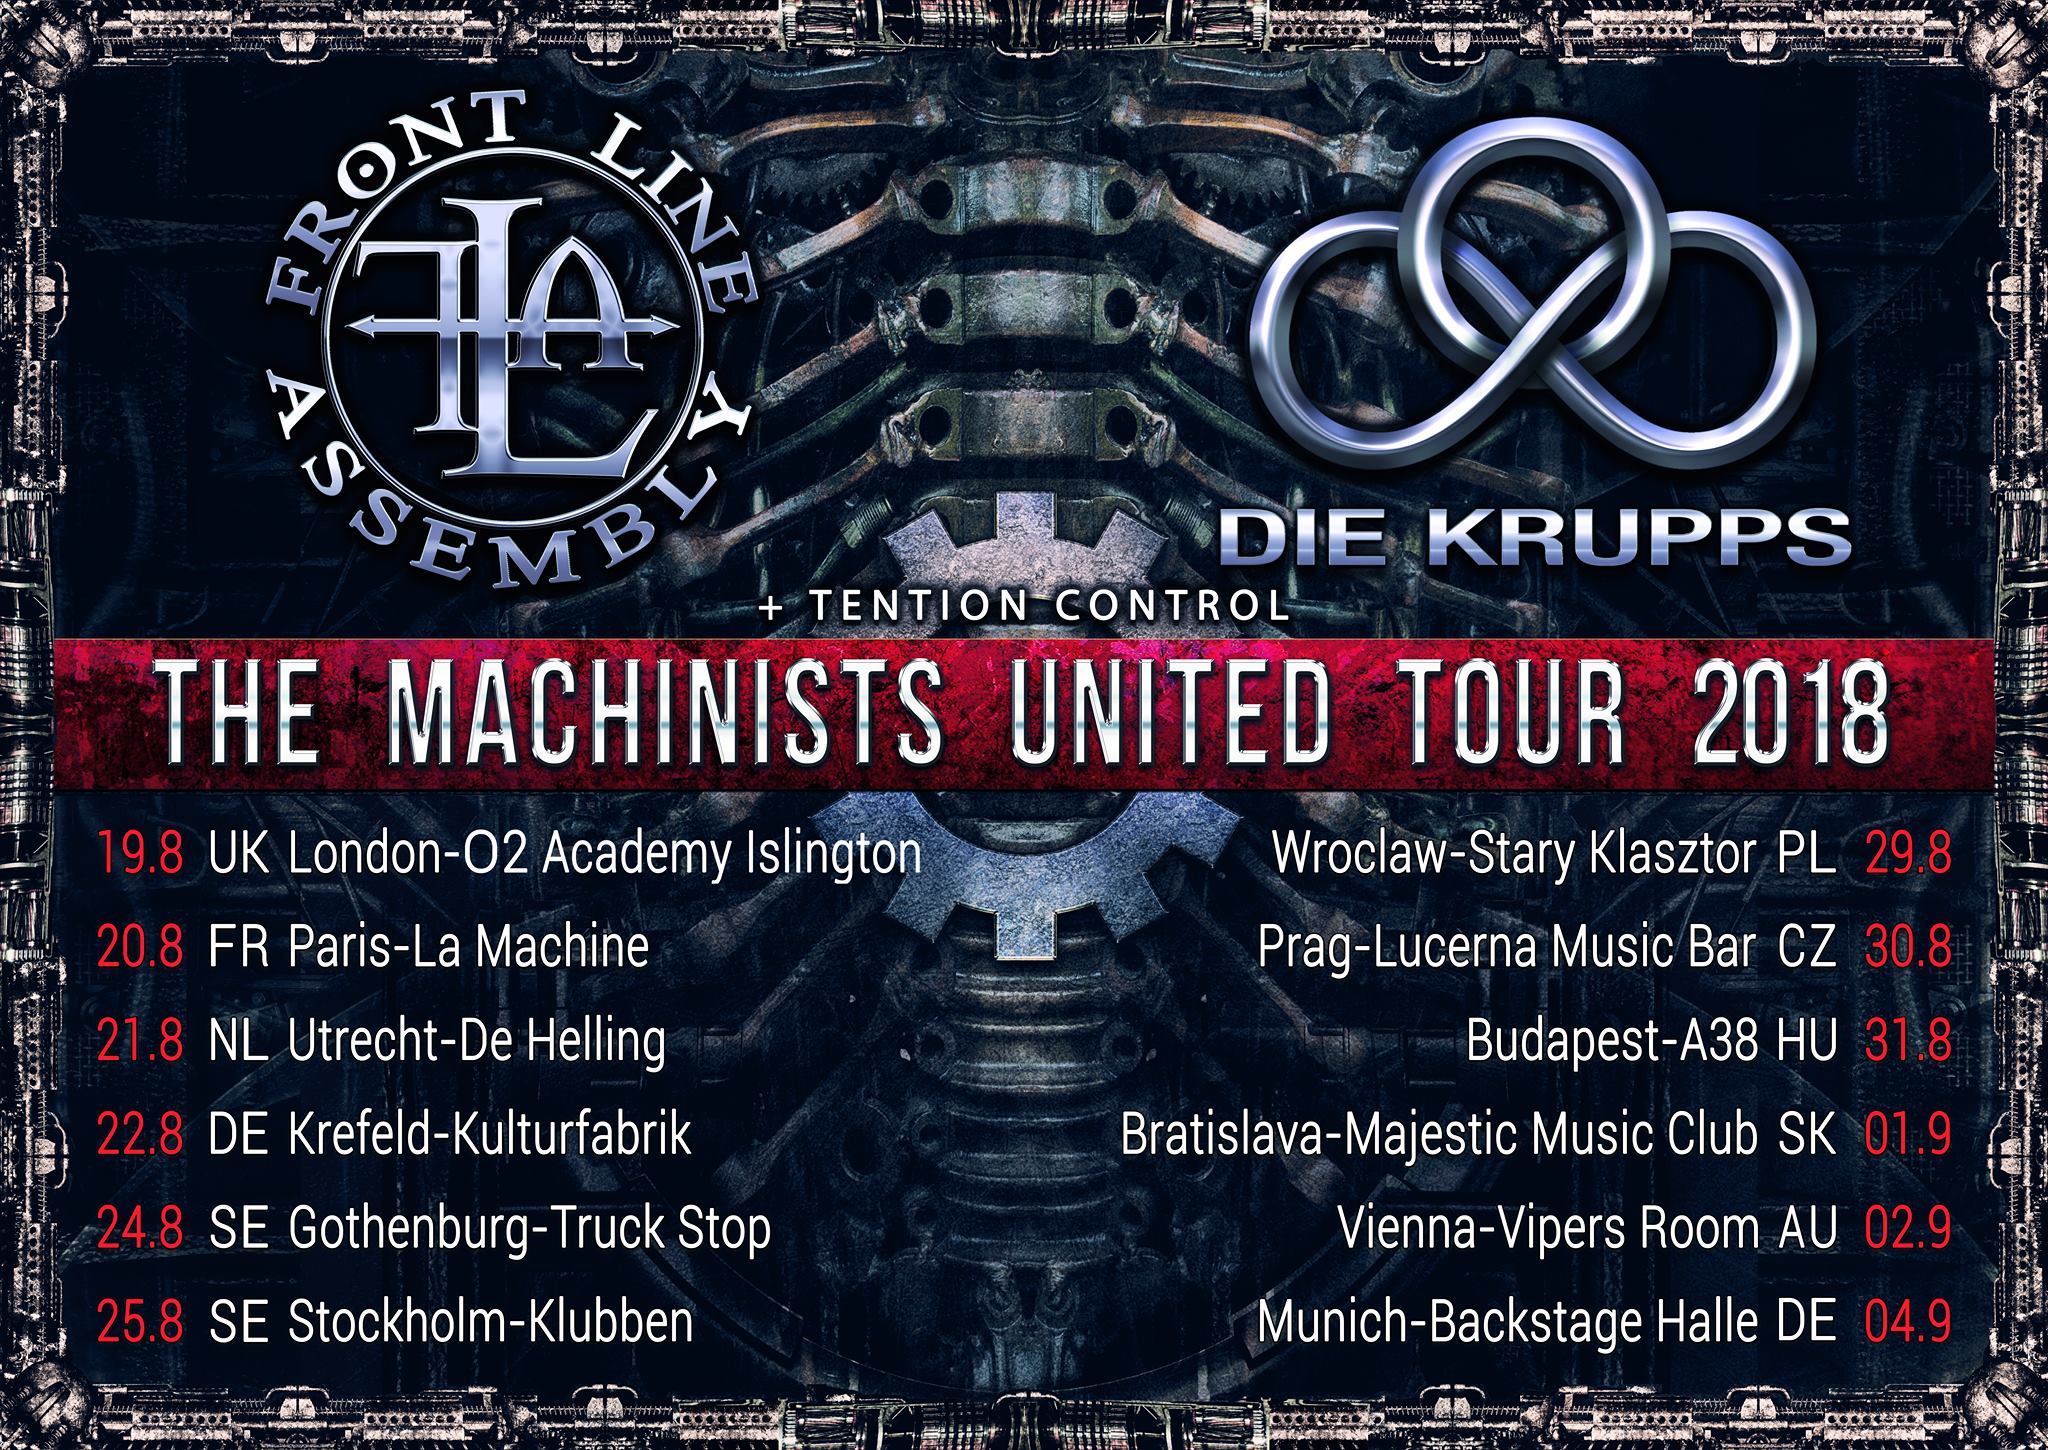 Die Krupps + Front Line Assembly @ La Machine du Moulin Rouge (Paris), le 20 Août 2018